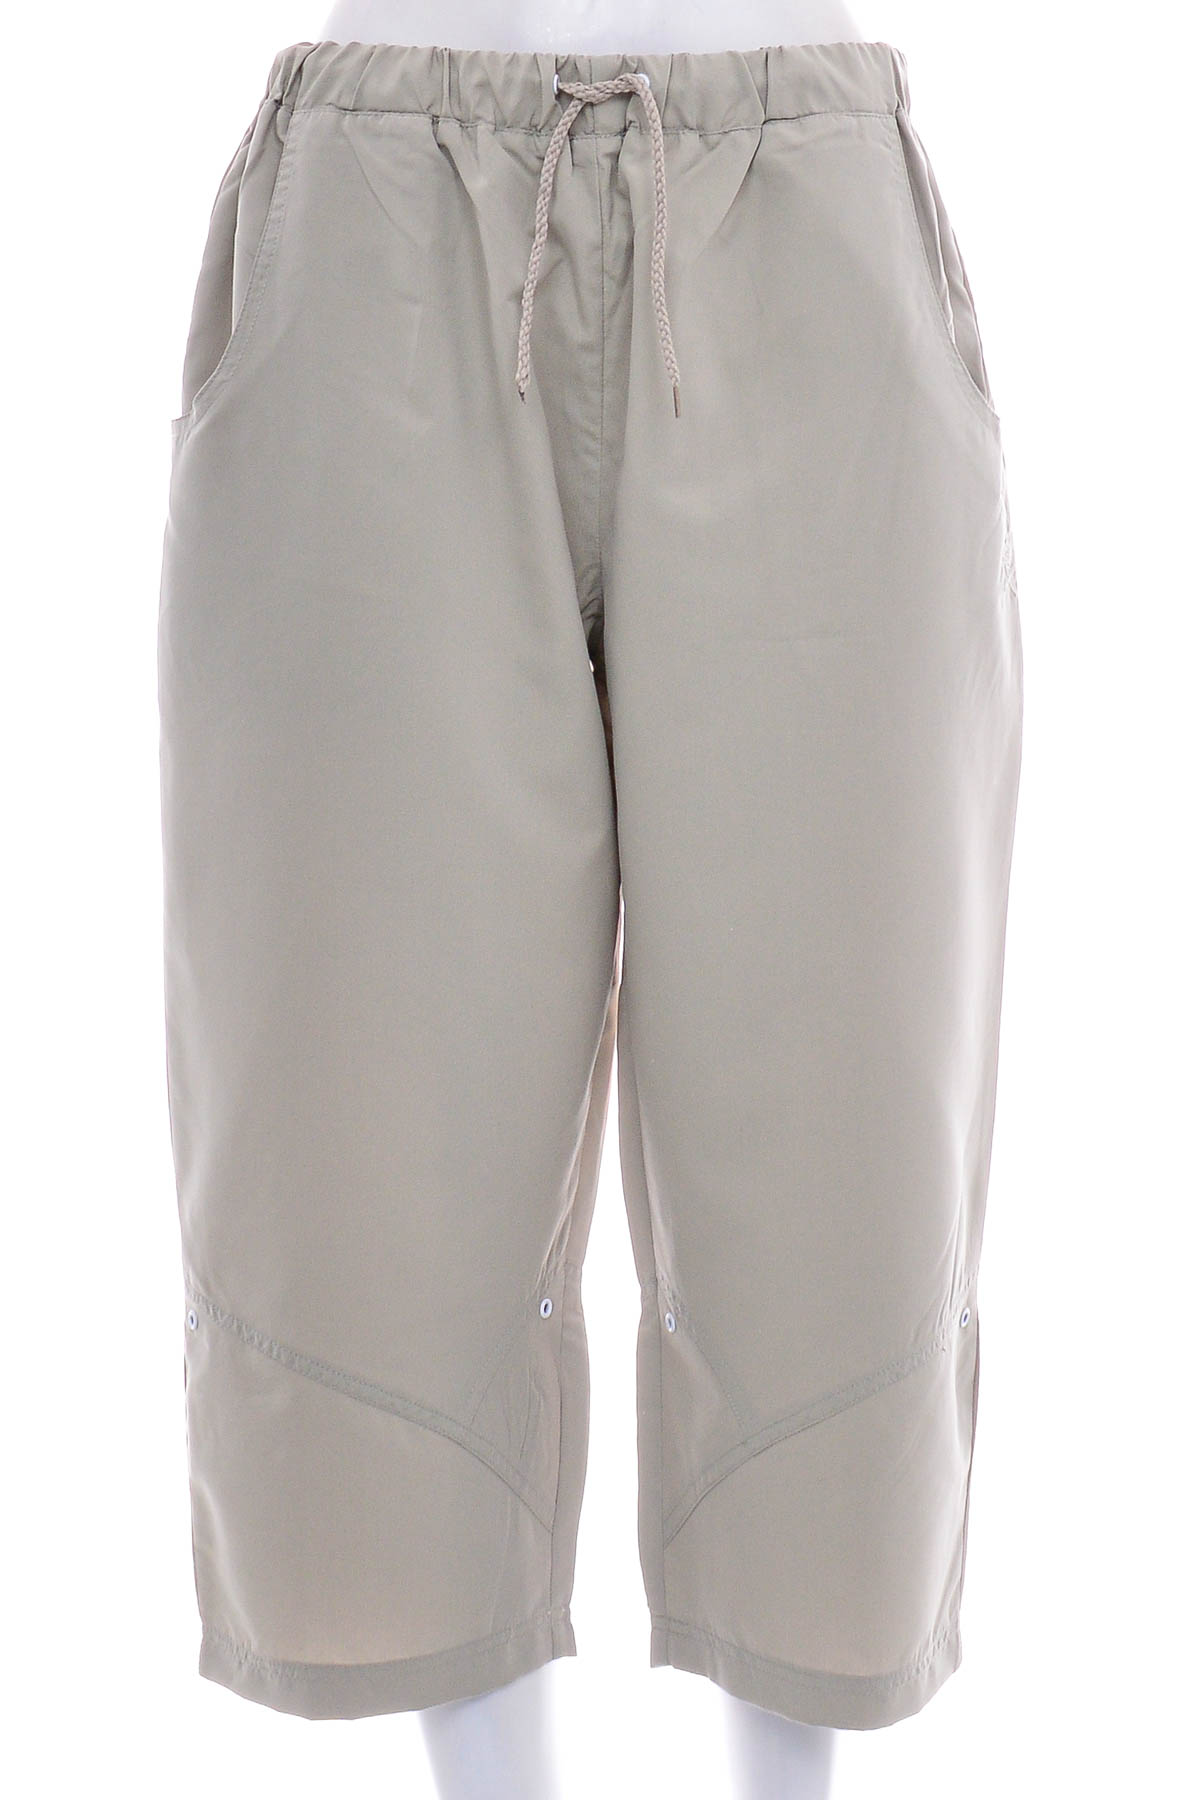 Female shorts - CHAMONIX - 0